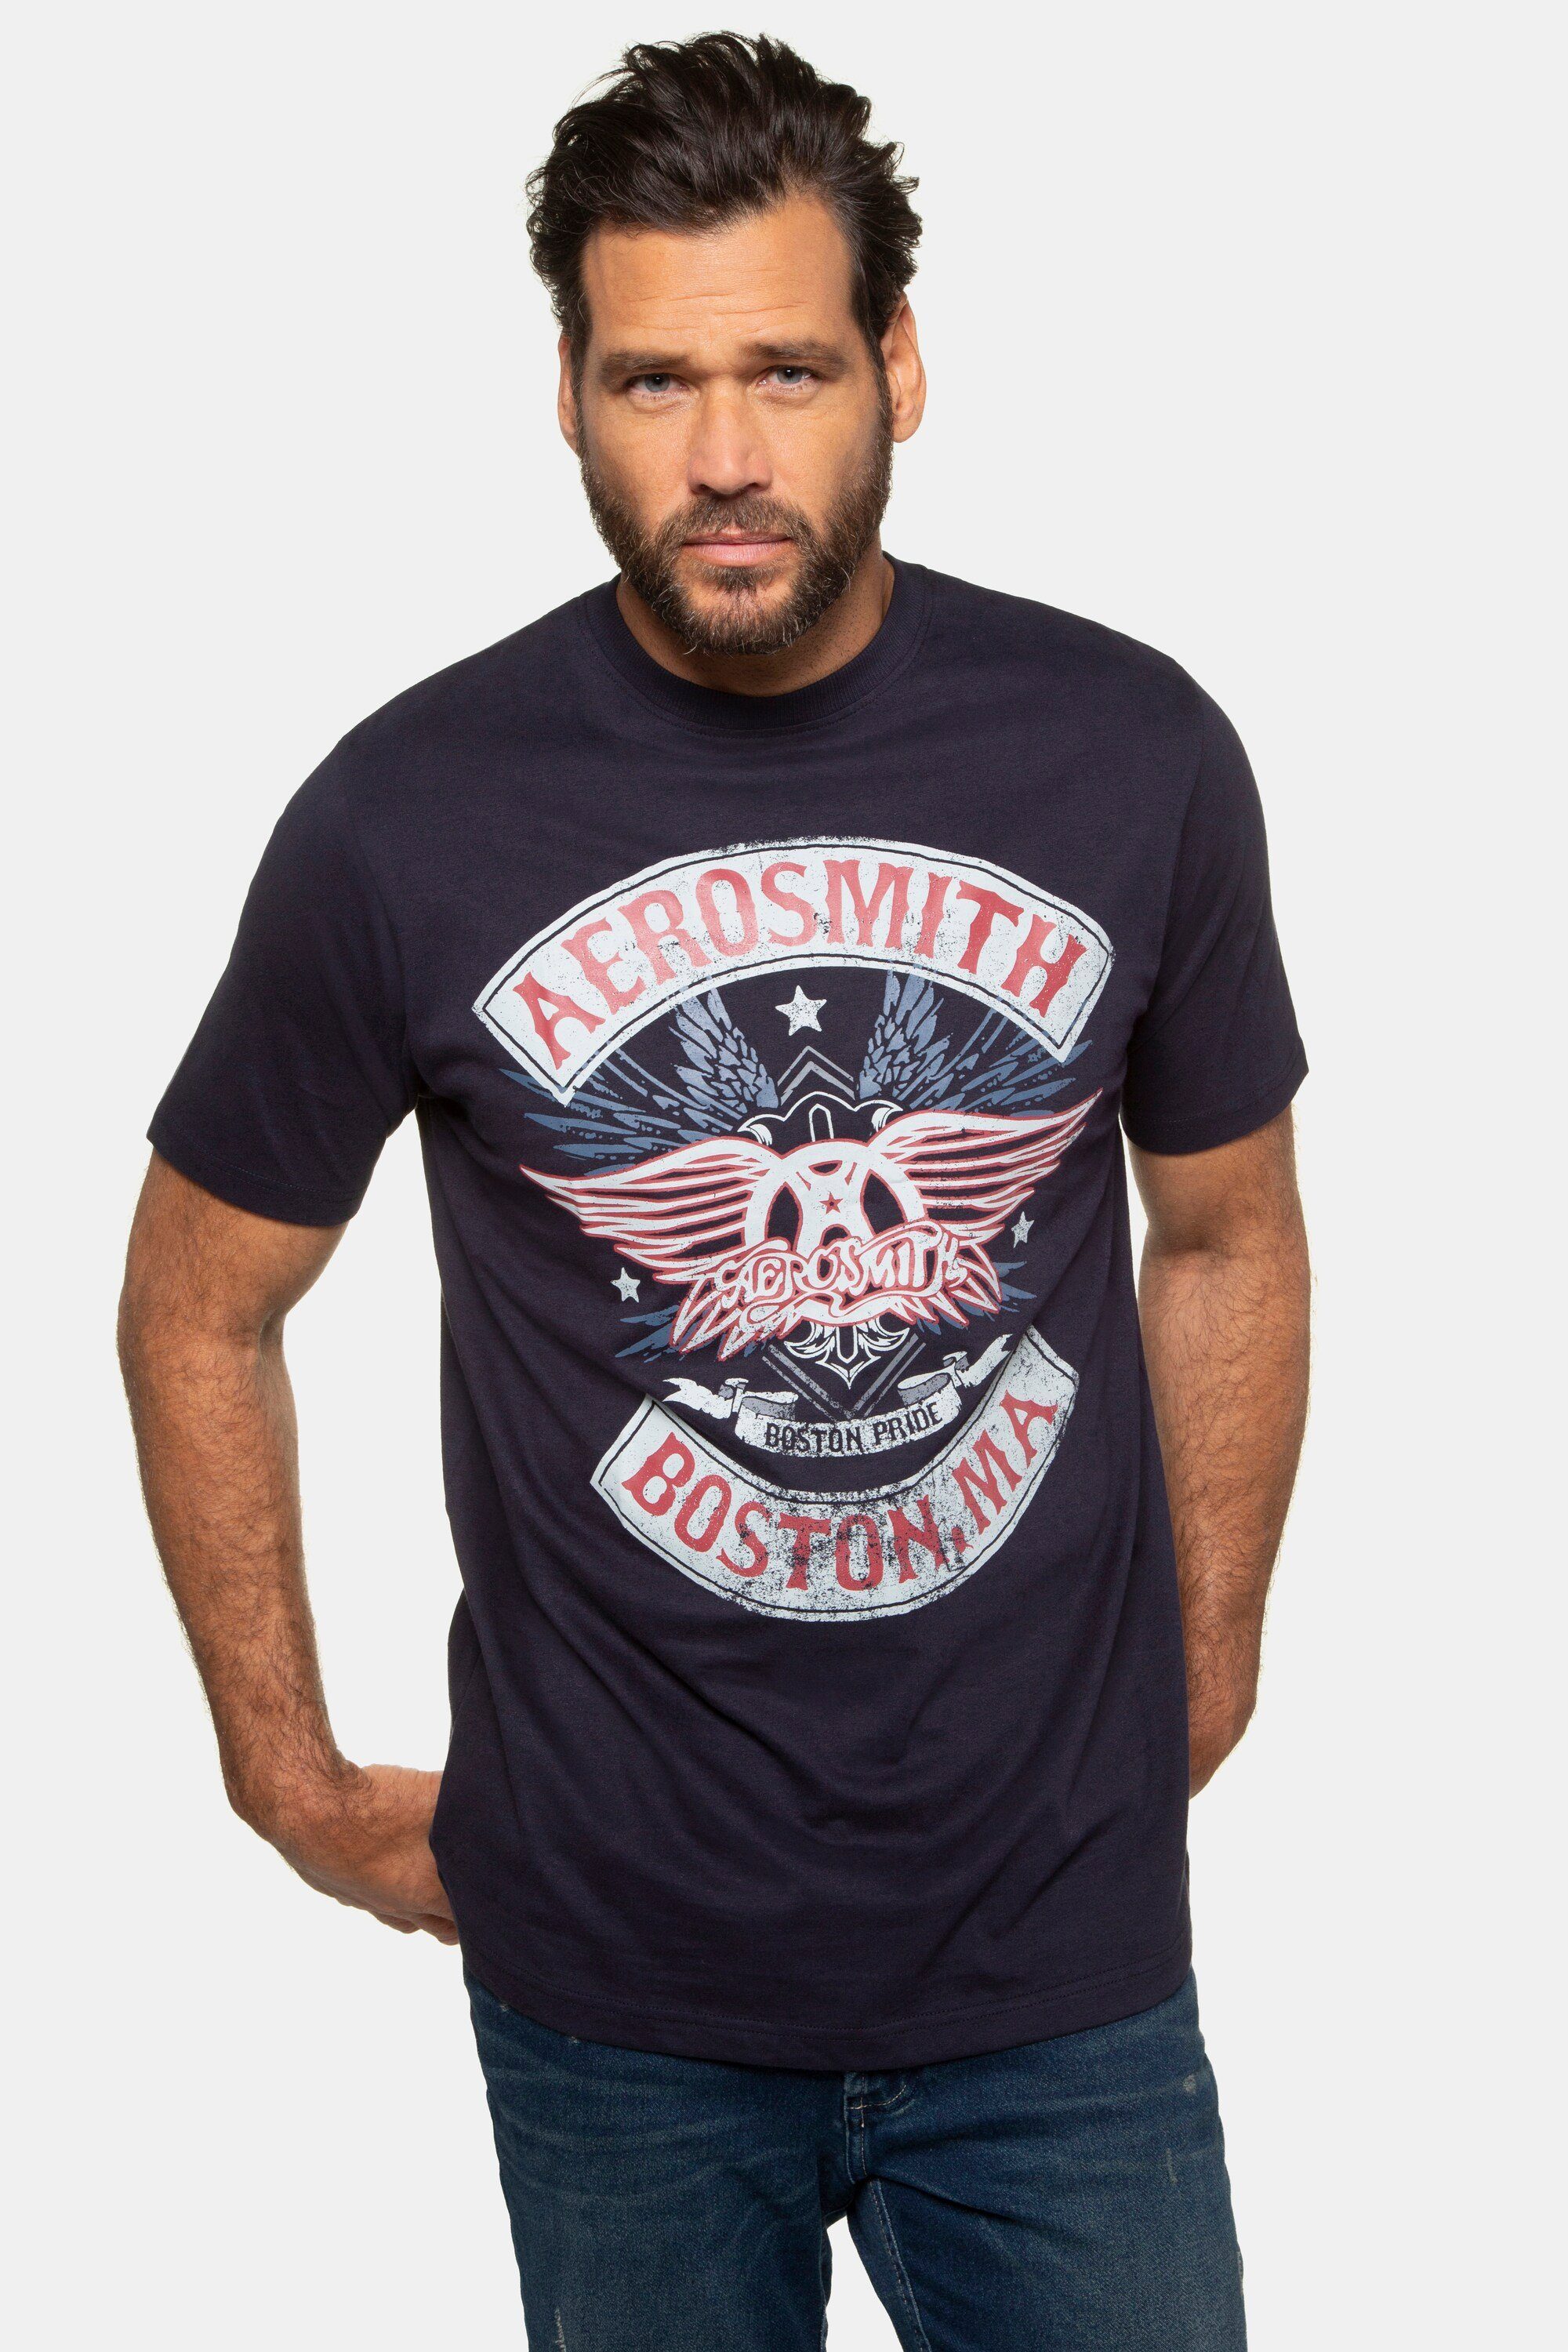 JP1880 T-Shirt T-Shirt Bandshirt Aerosmith Halbarm dunkel marine